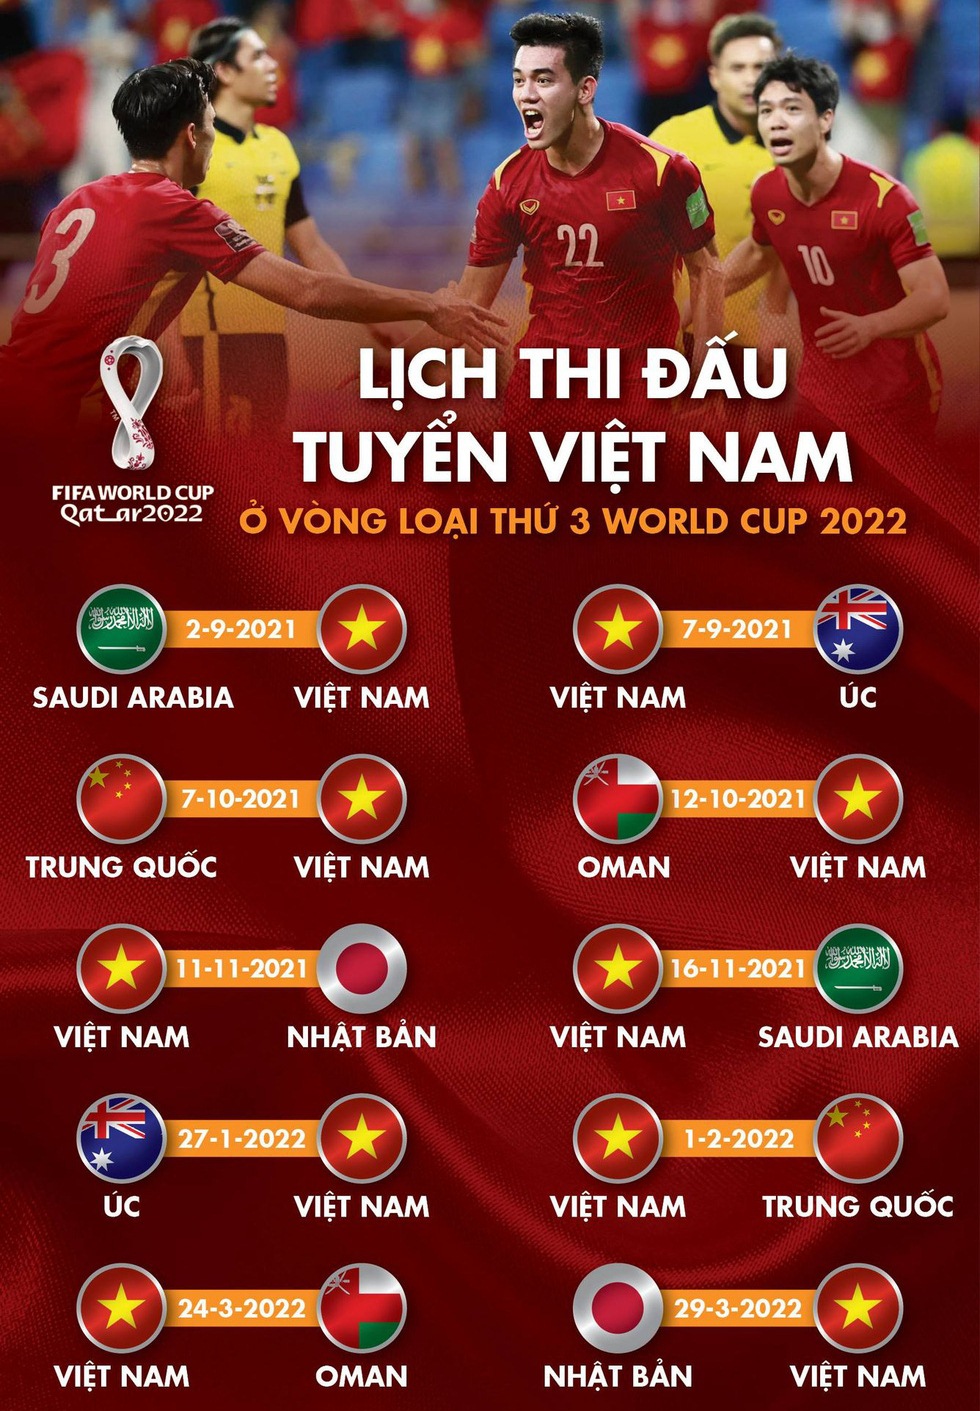 Lịch thi đấu của tuyển Việt Nam ở vòng loại cuối cùng